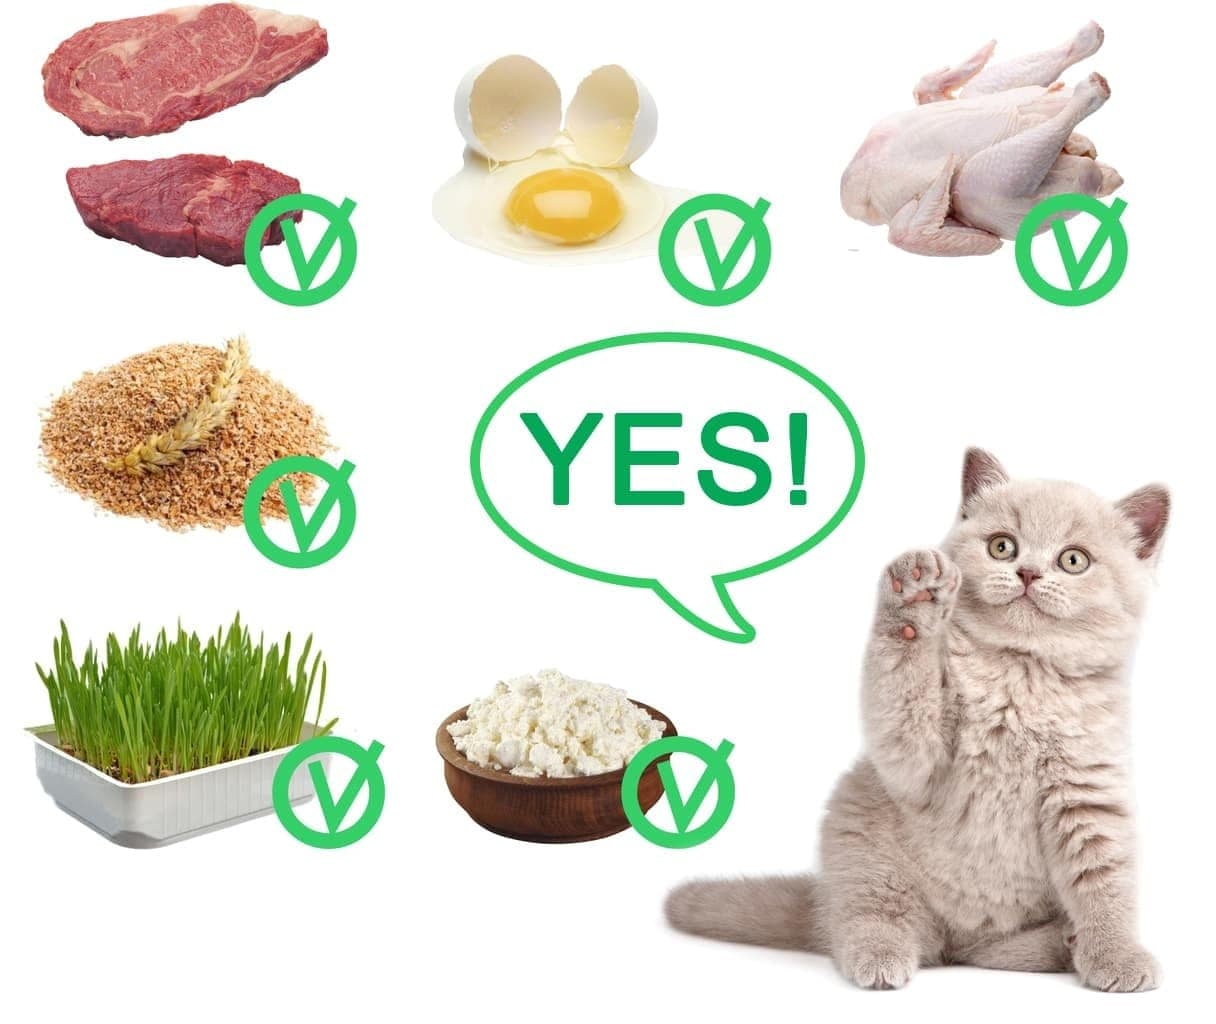 чем лучше кормить кошку домашней едой или кормом